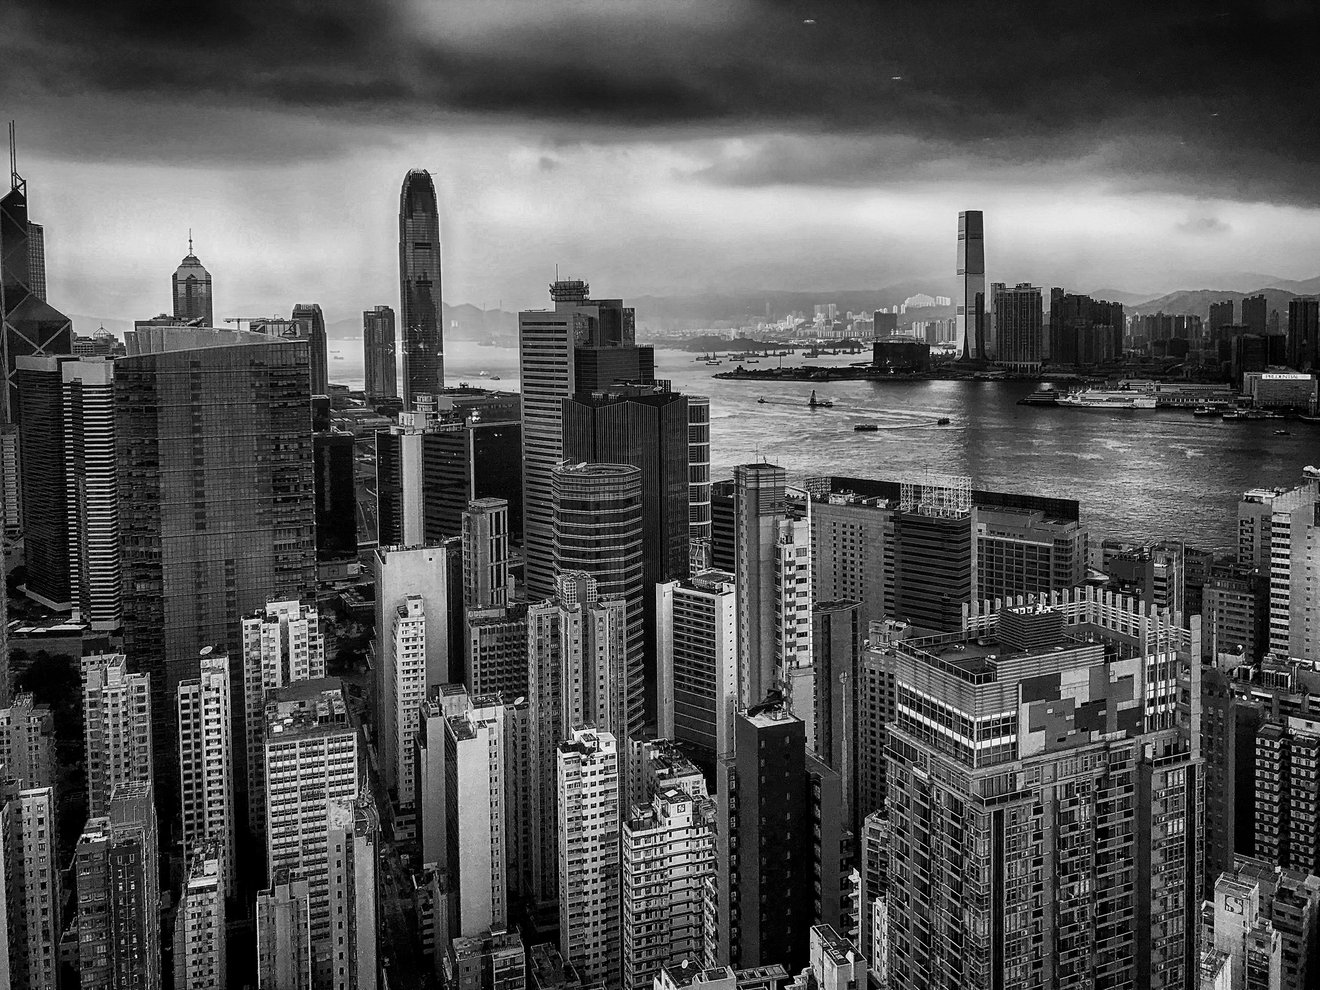 Skyscrapers of Hong Kong -Seed Nft